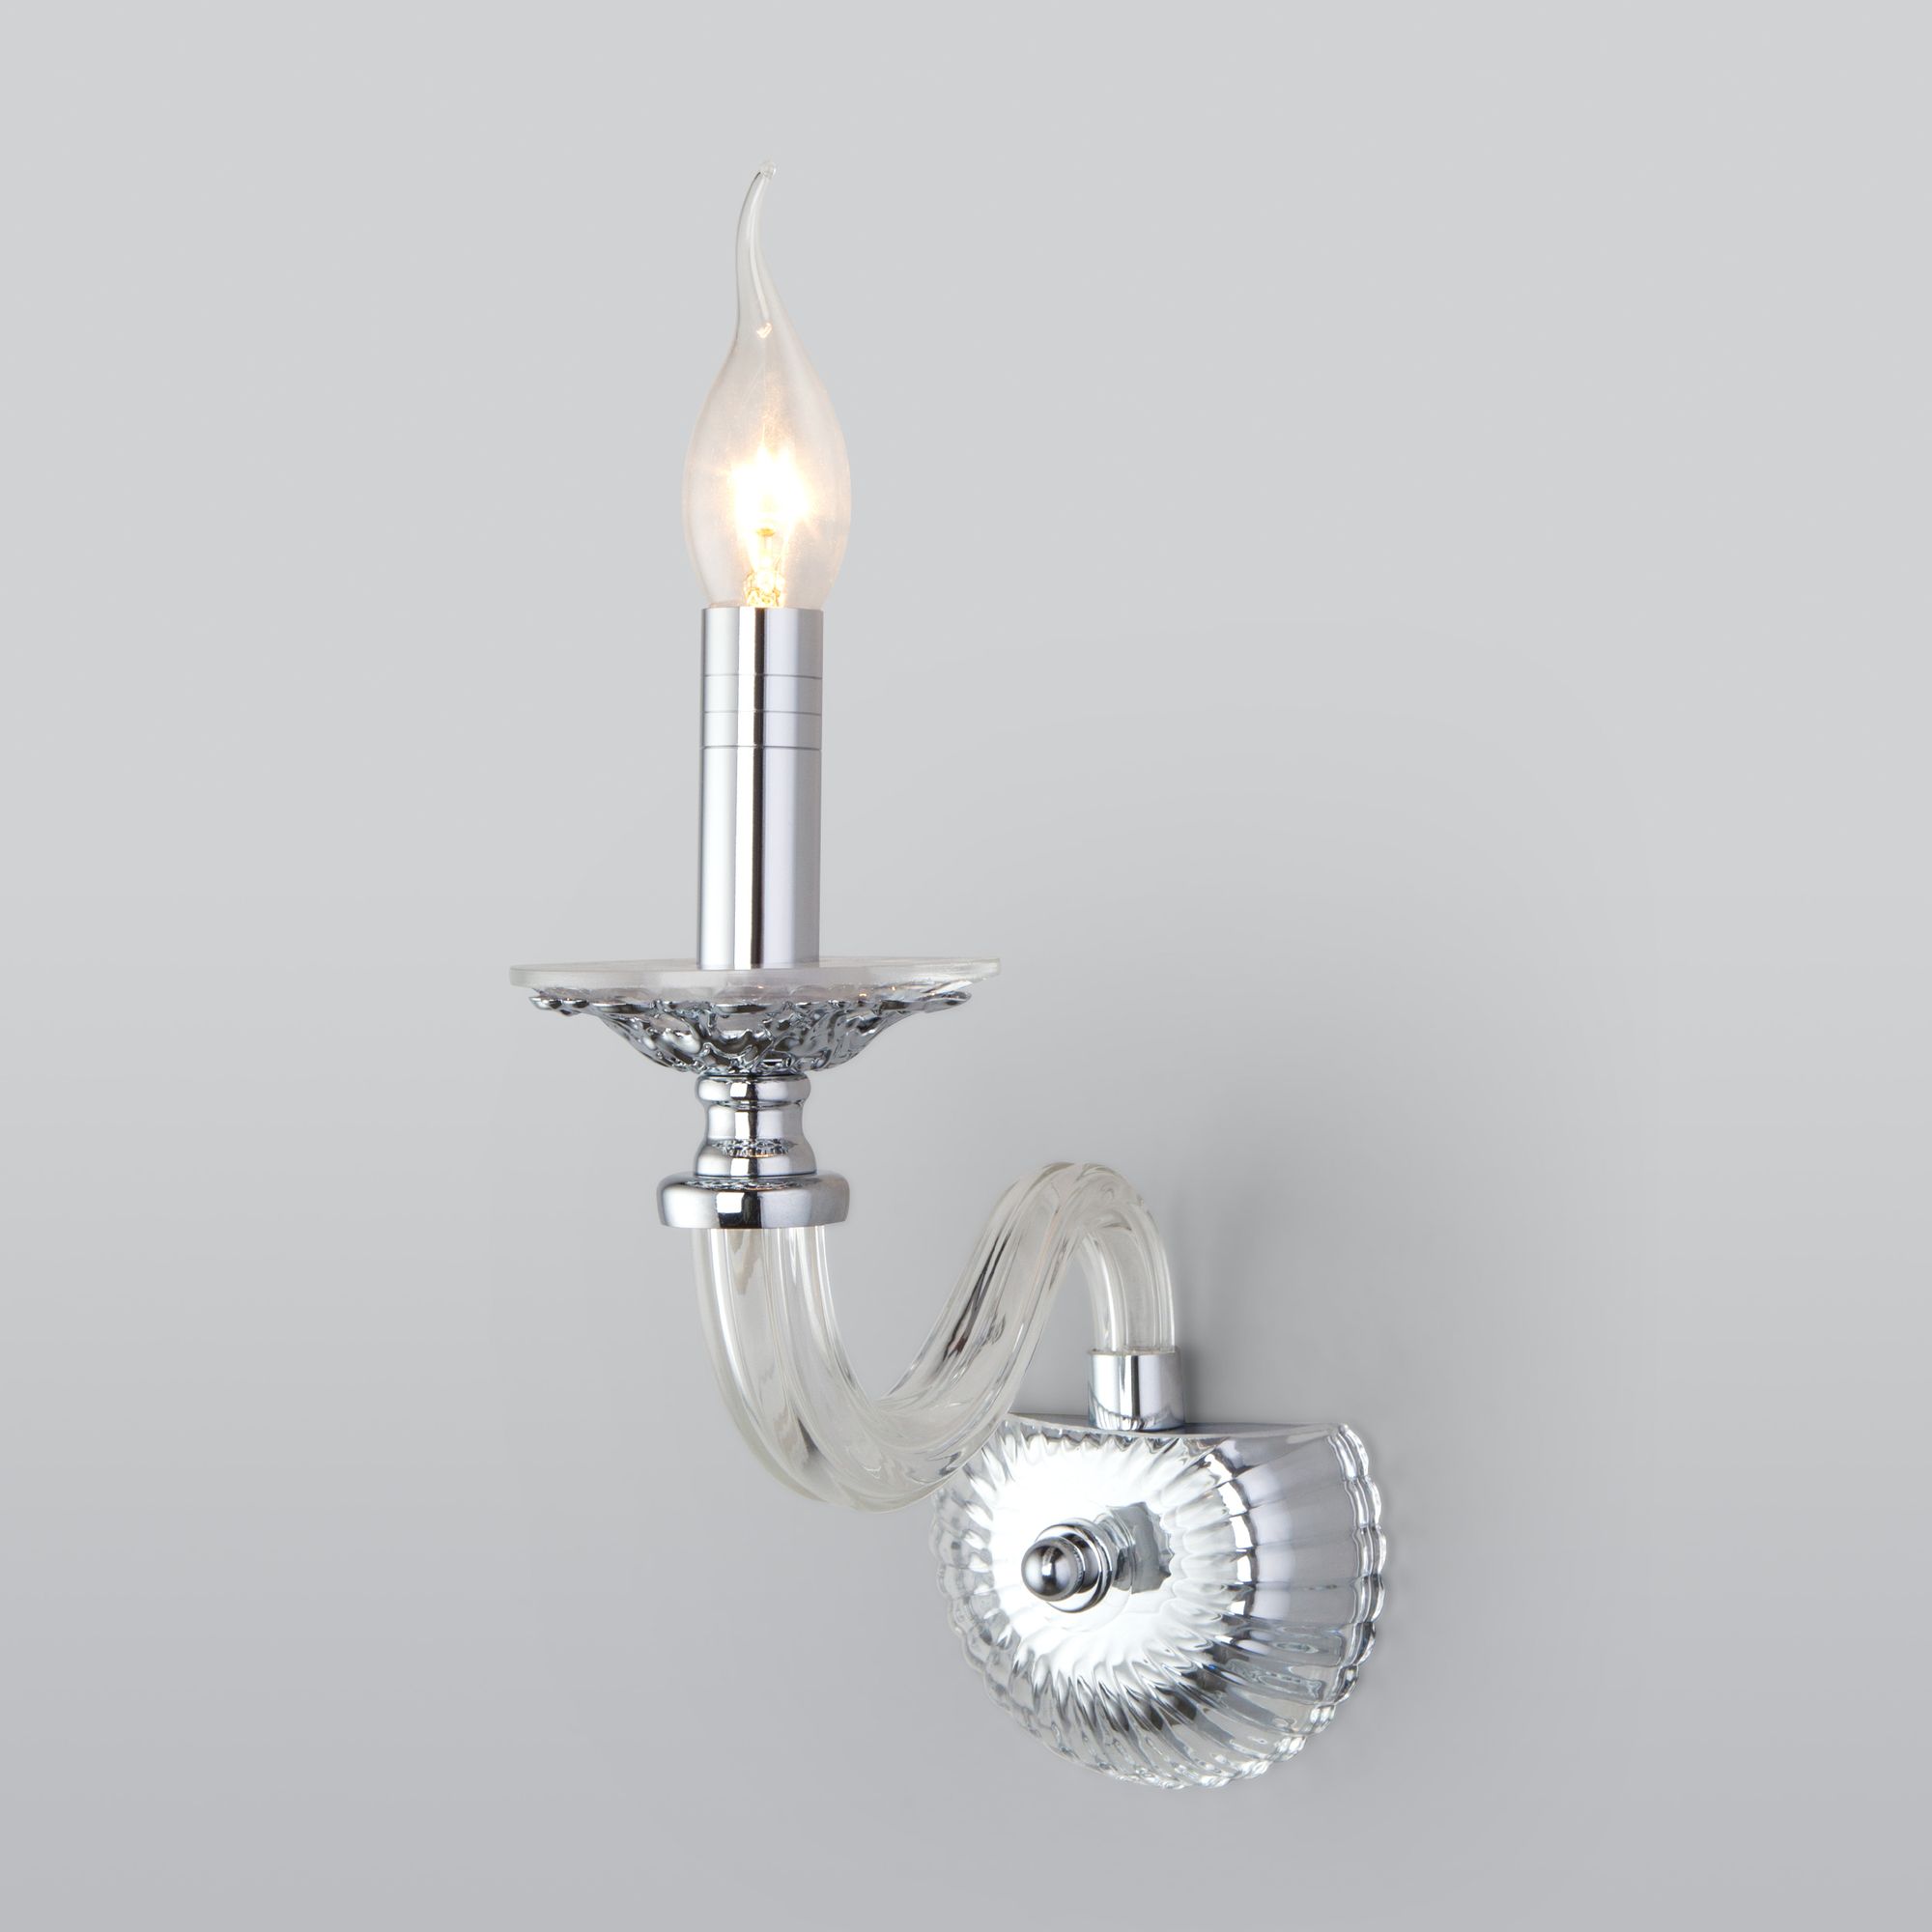 Настенный светильник в классическом стиле Bogate's Olenna 338/1. Фото 1